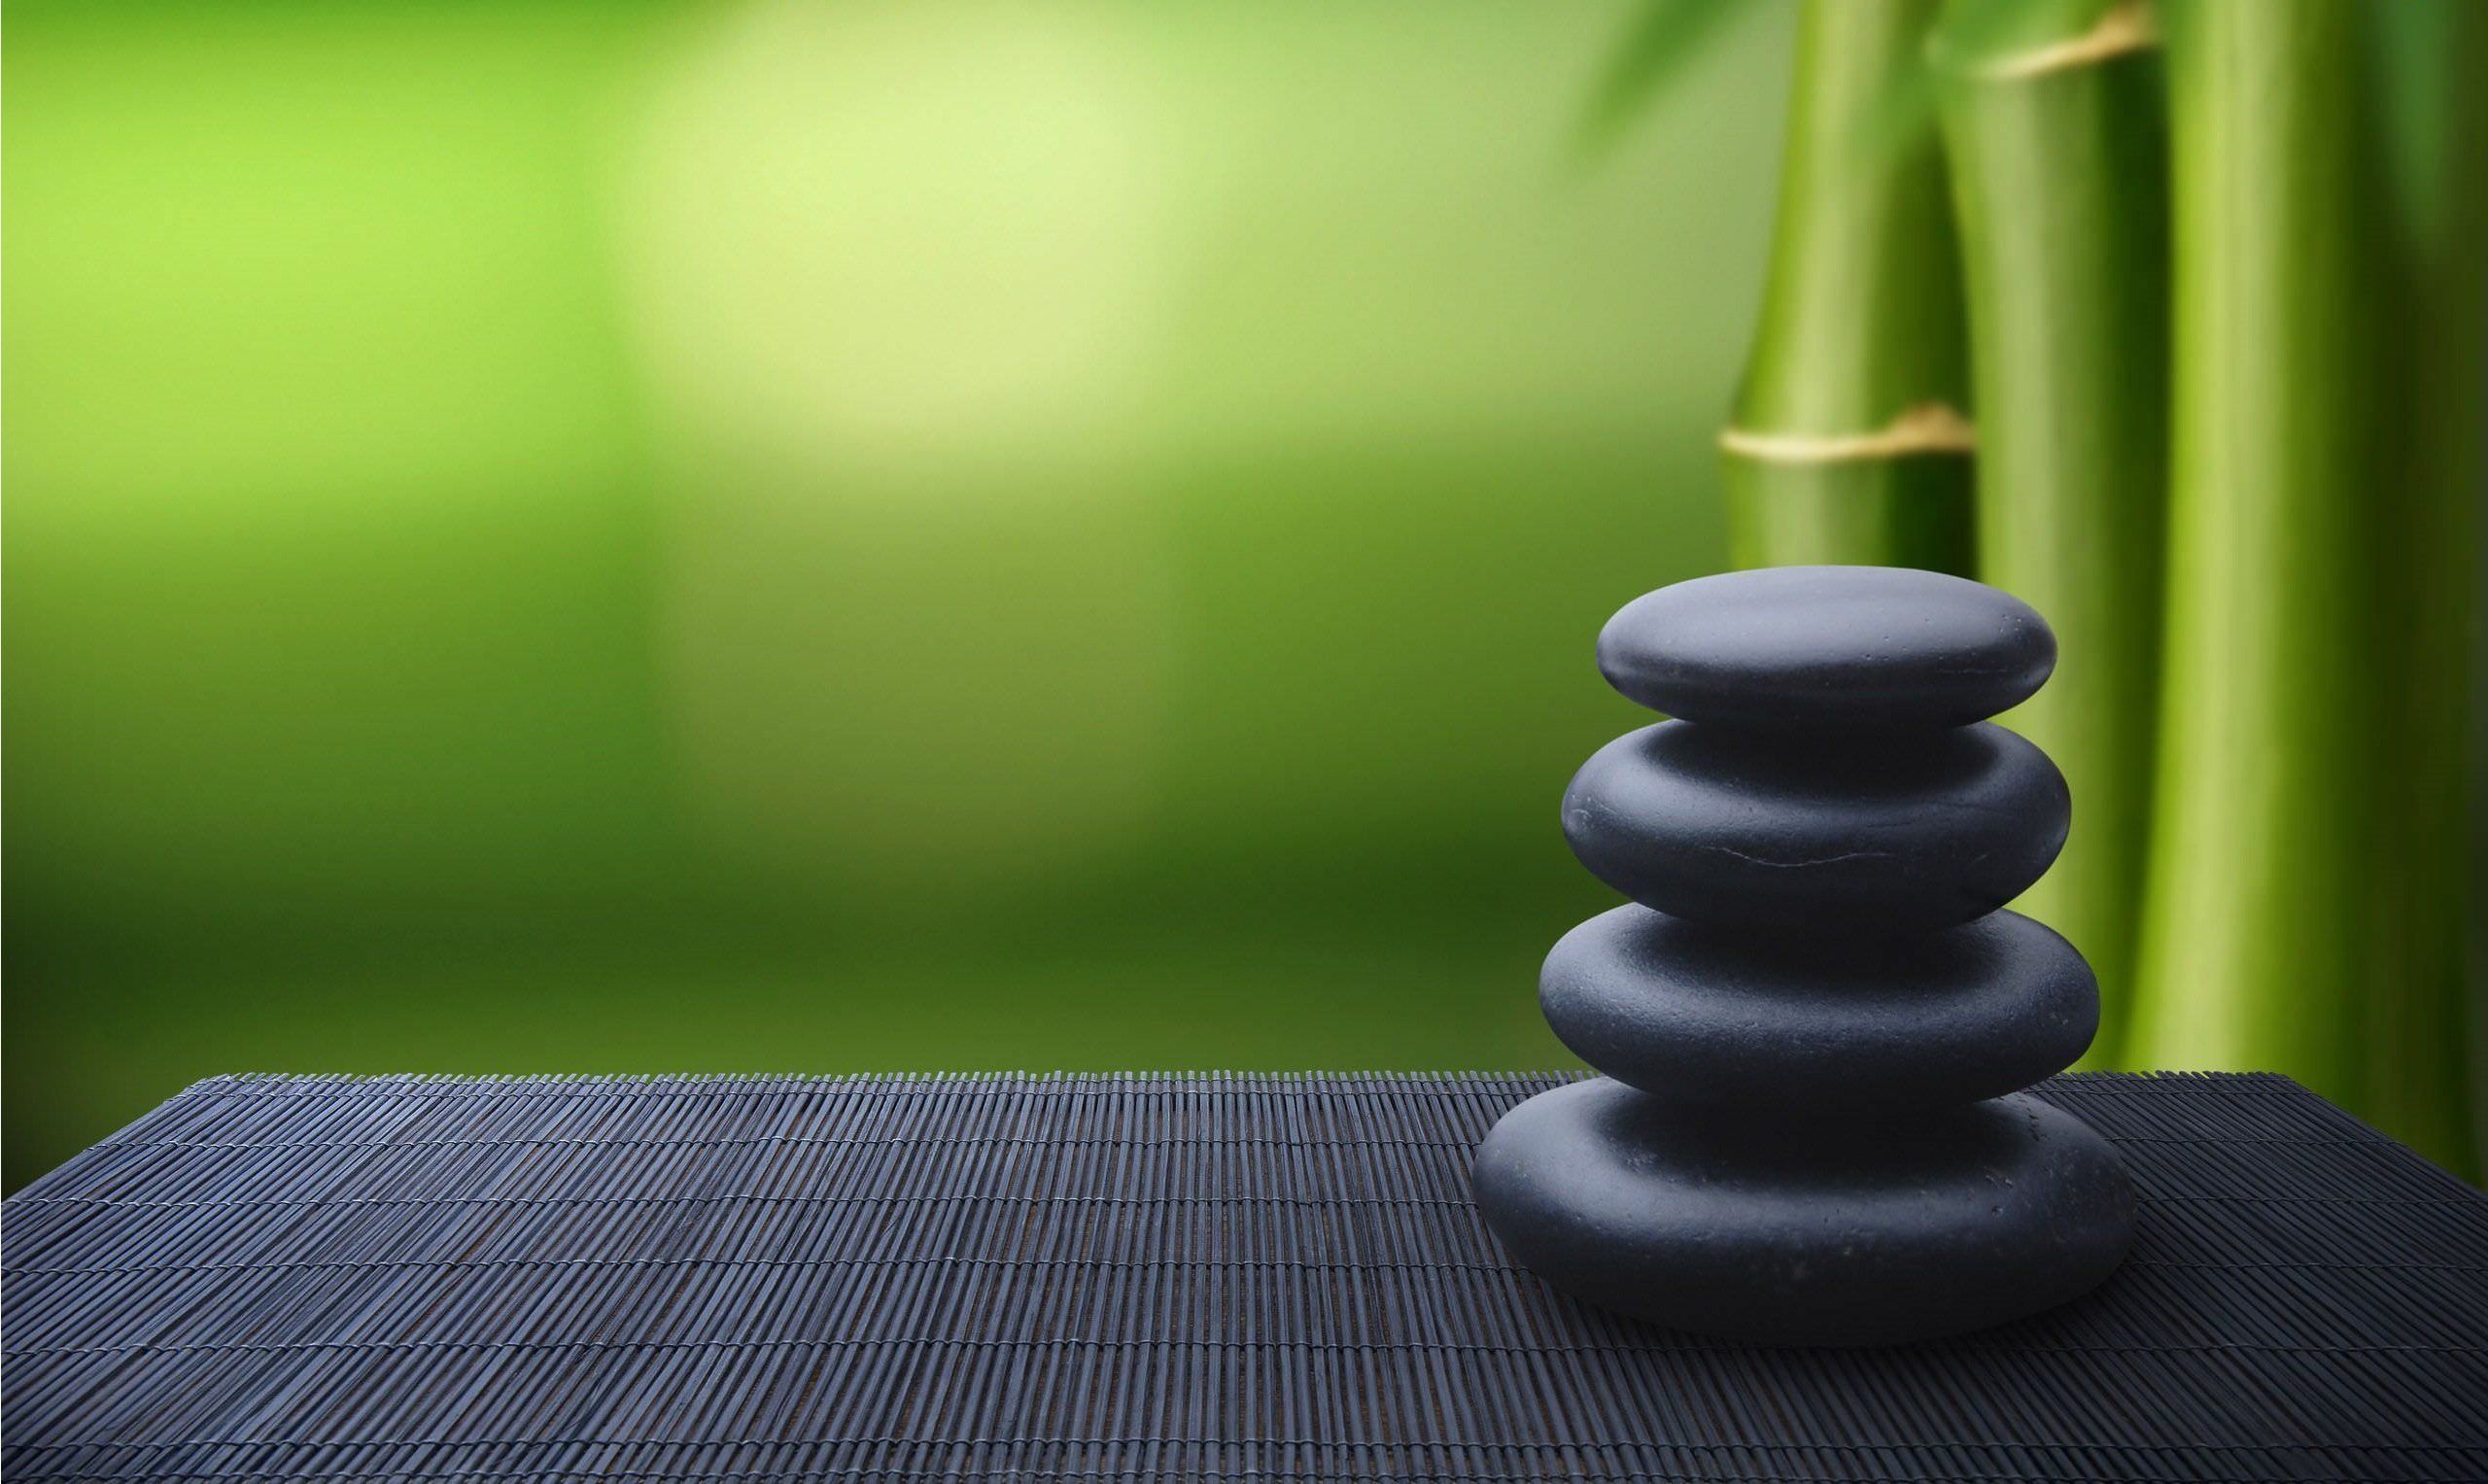 Free Download Zen Wallpapers Top Zen Backgrounds Wallpaperaccess